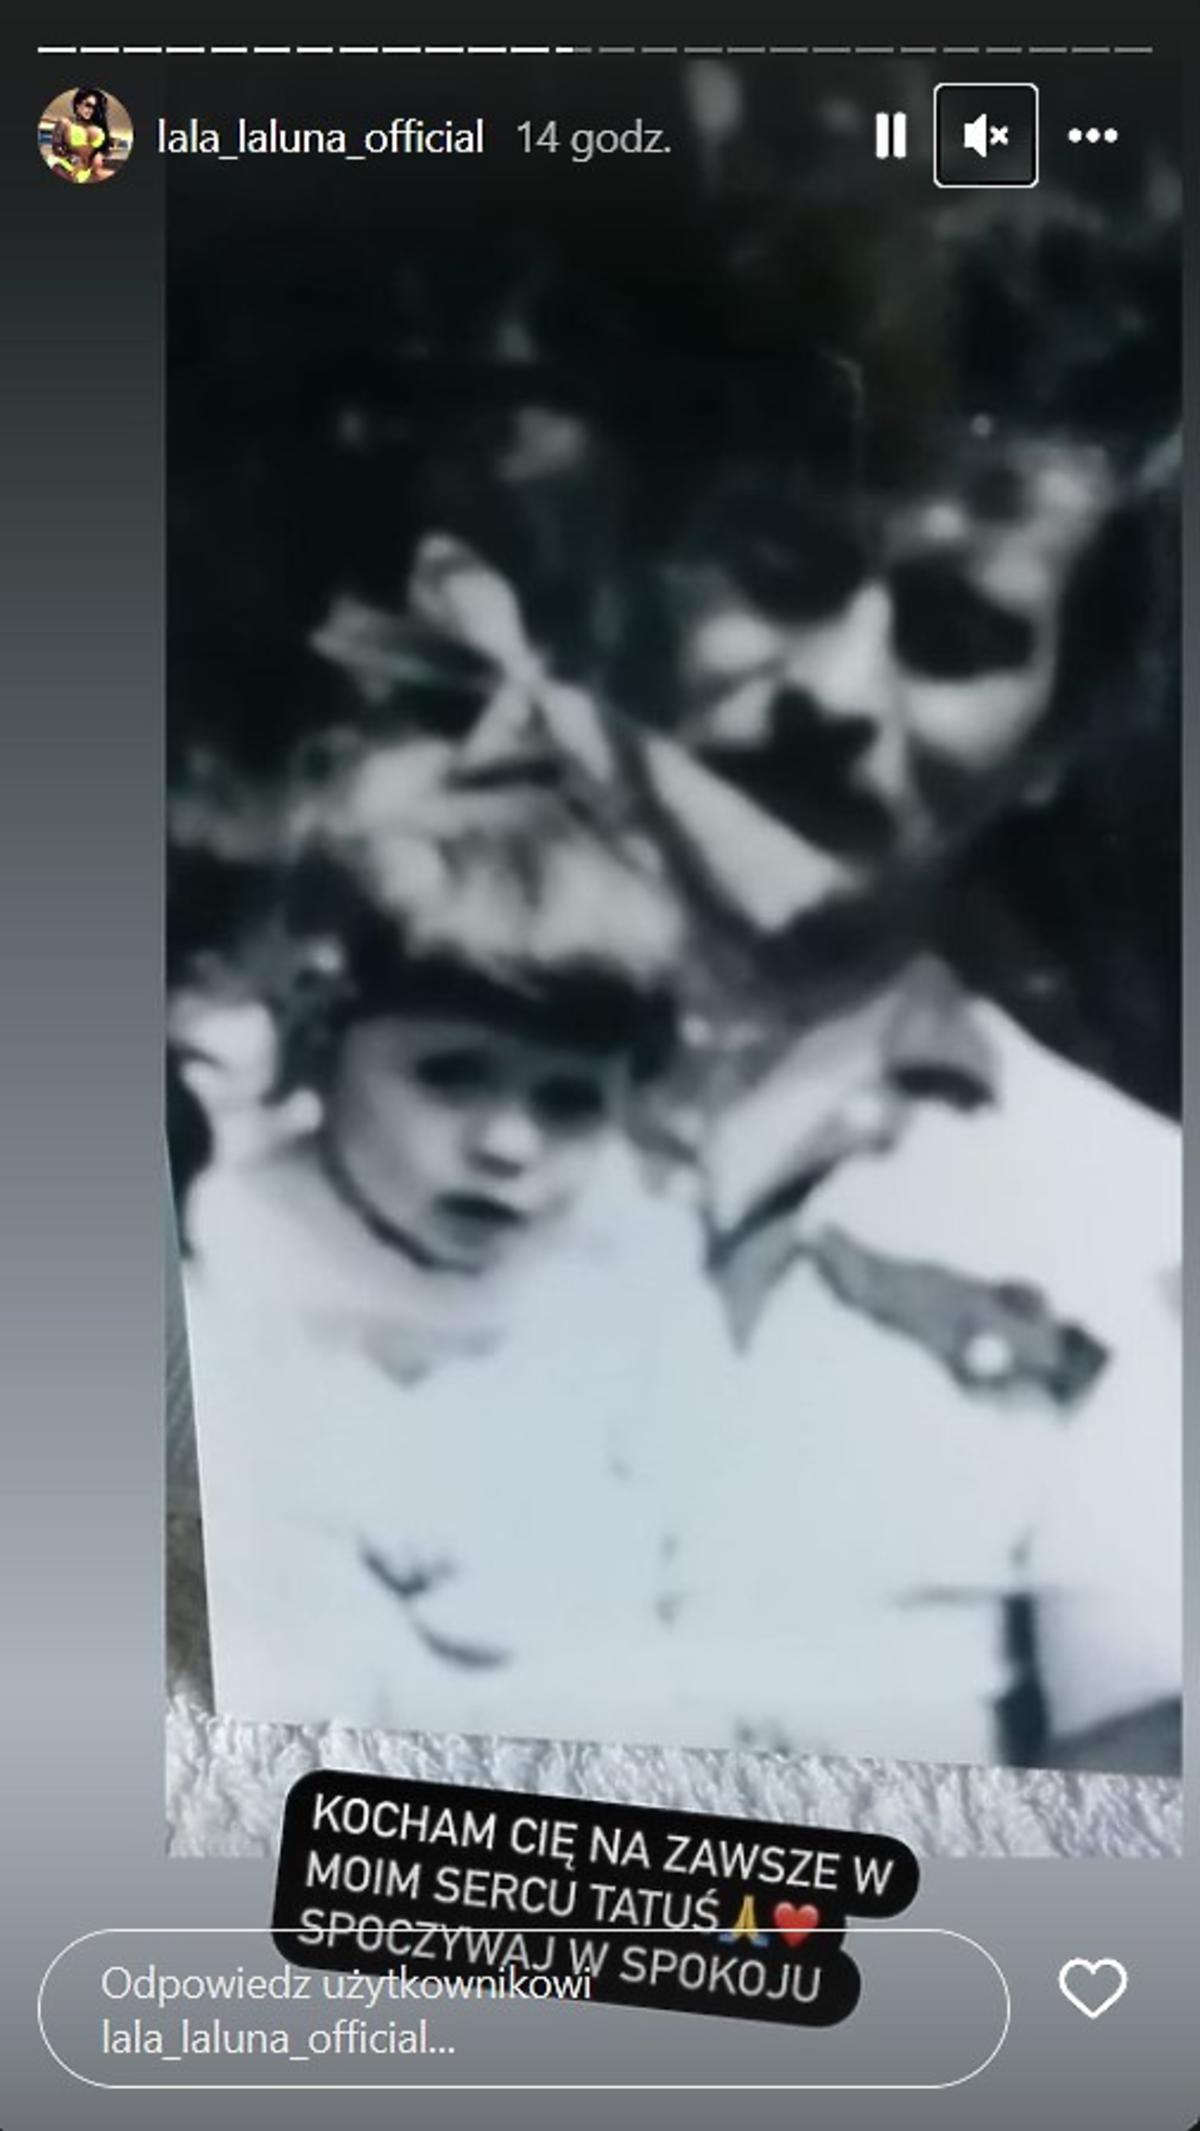 Królowe życia: Laluna pokazała zdjęcie z tatą